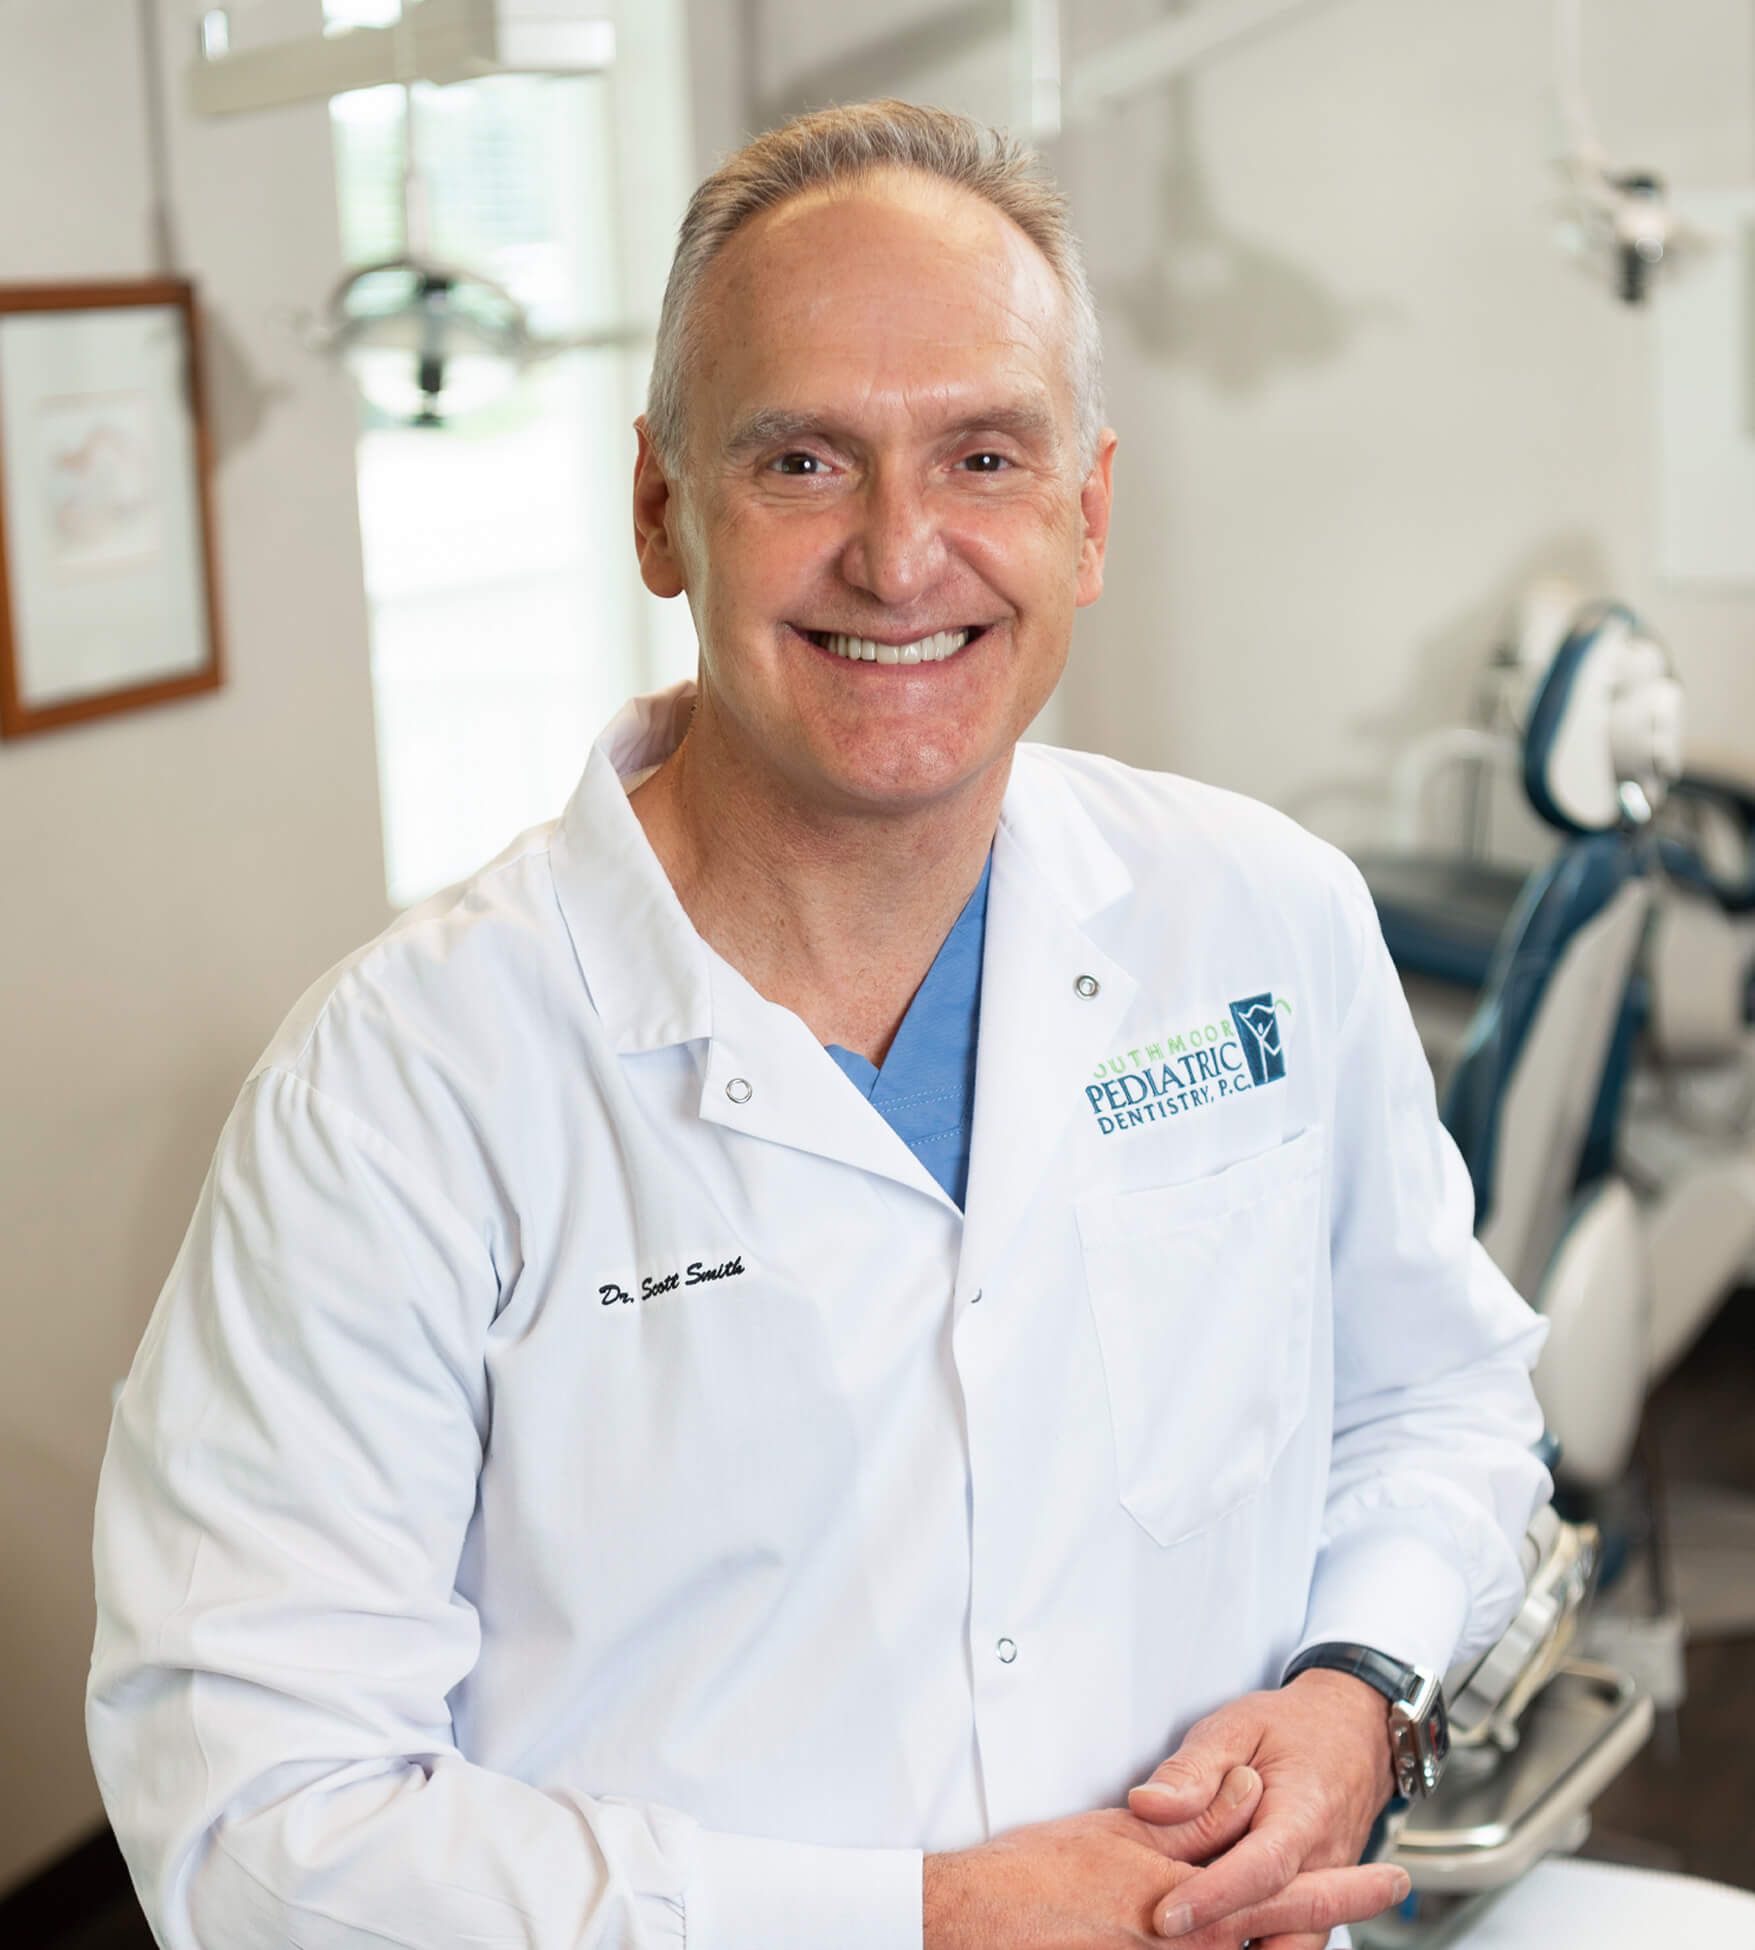 Dr. Scott Smith Pediatric Dentist